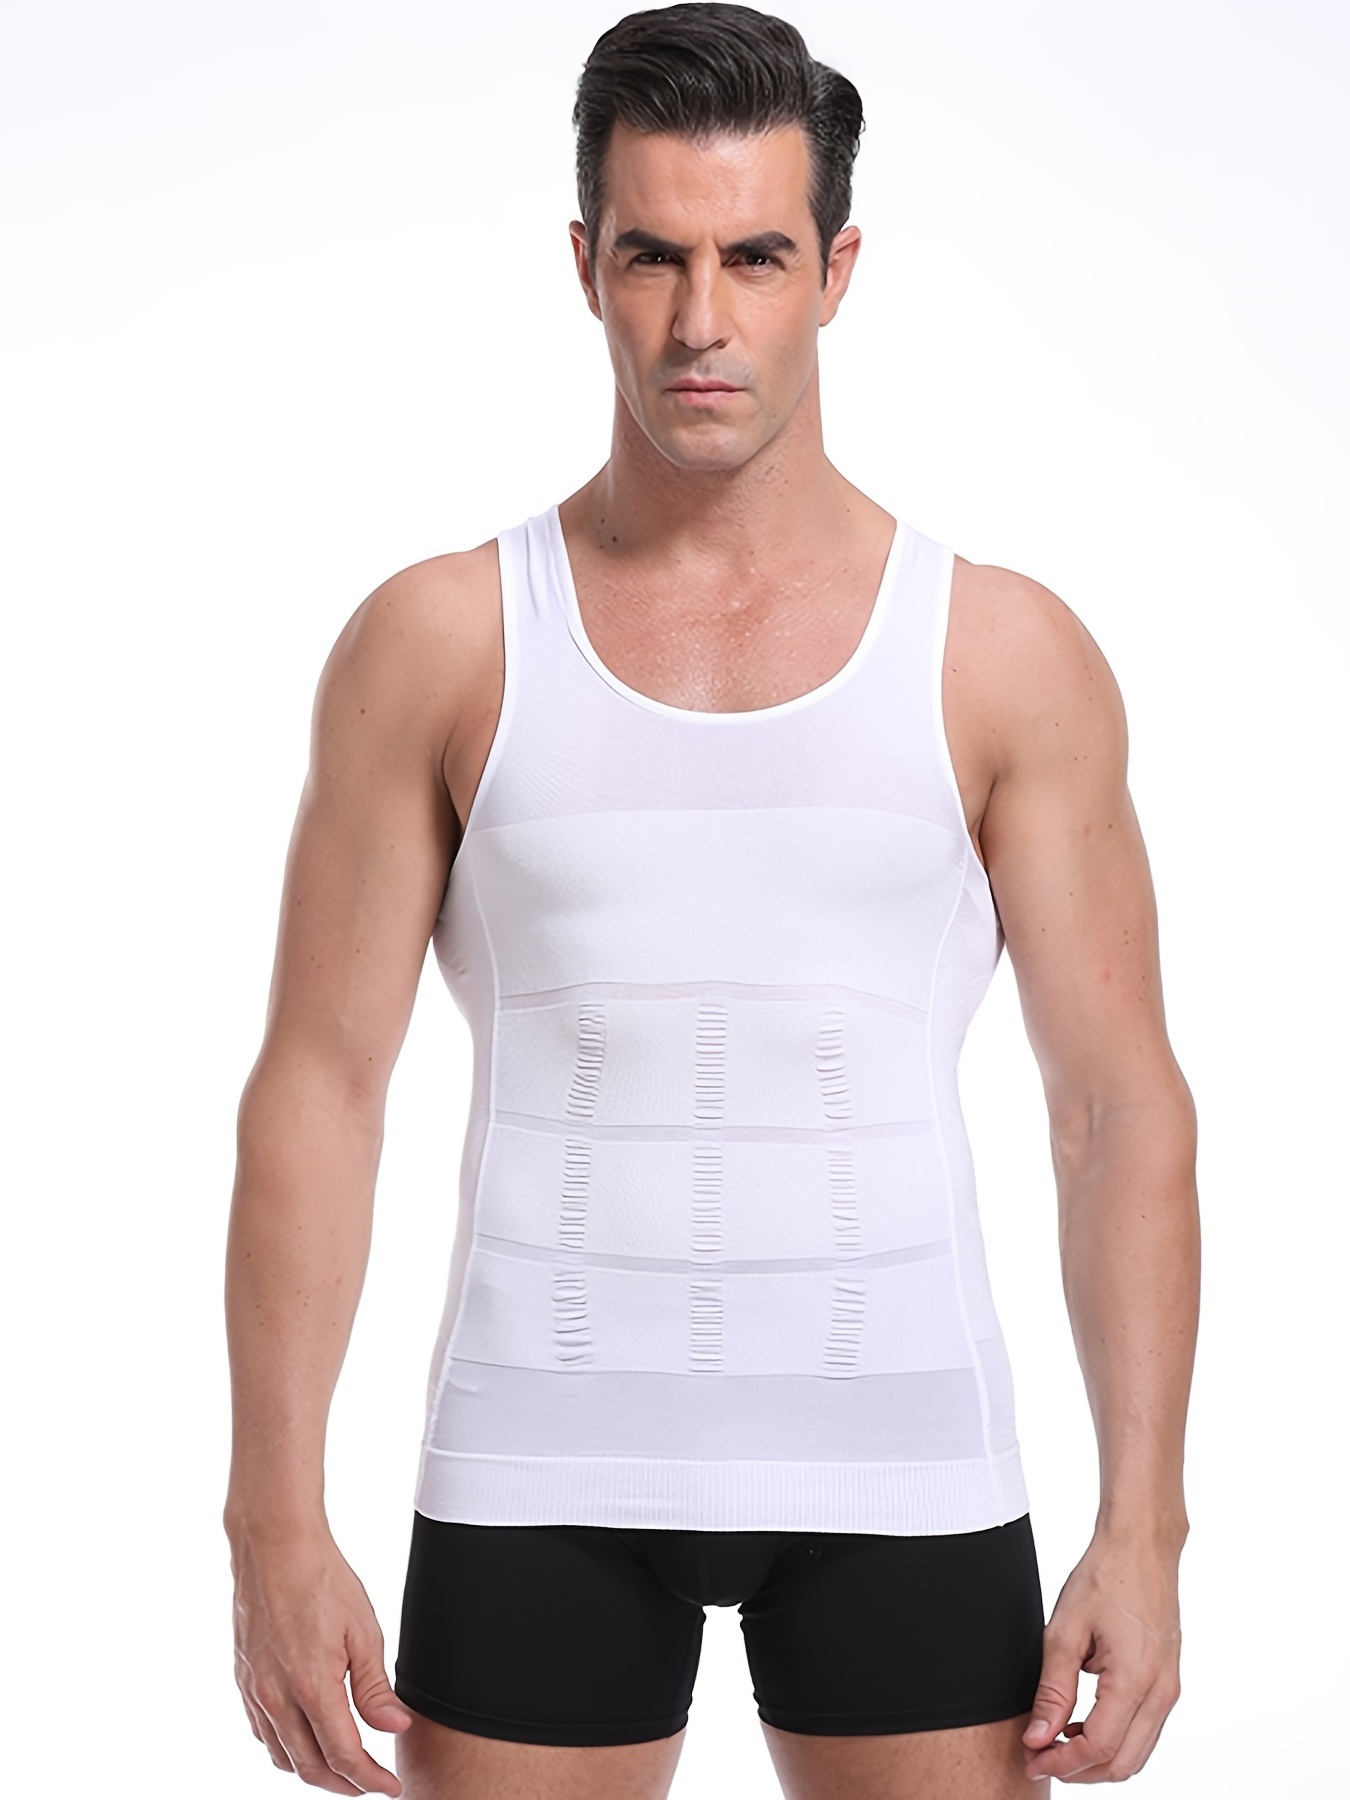 Men's Body Shaper Slimming Vest Tank Top